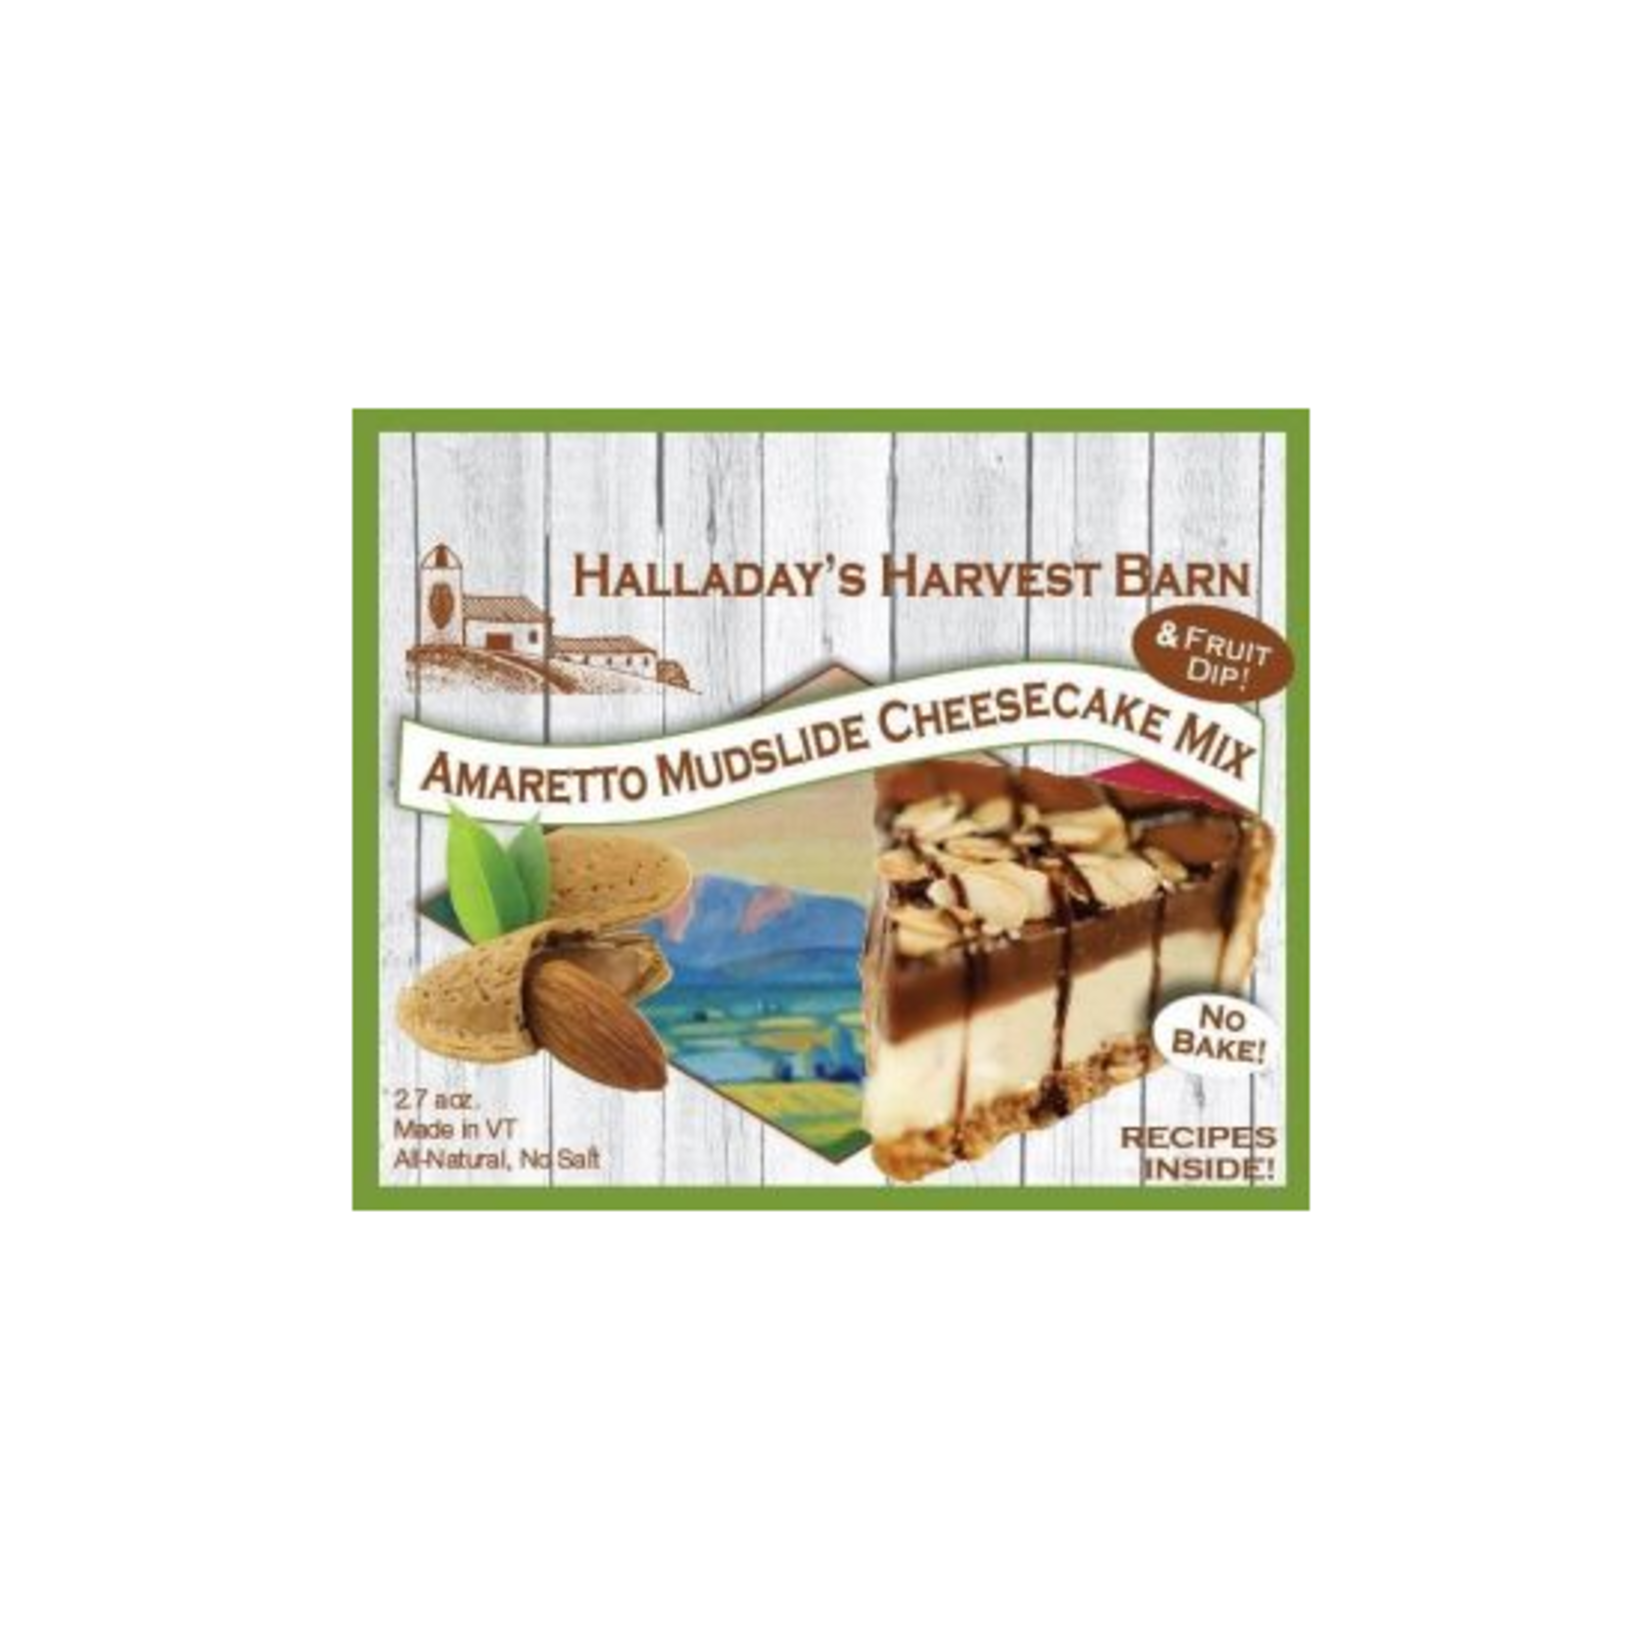 Halladay's Harvest Barn Amaretto Mudslide Cheesecake Mix